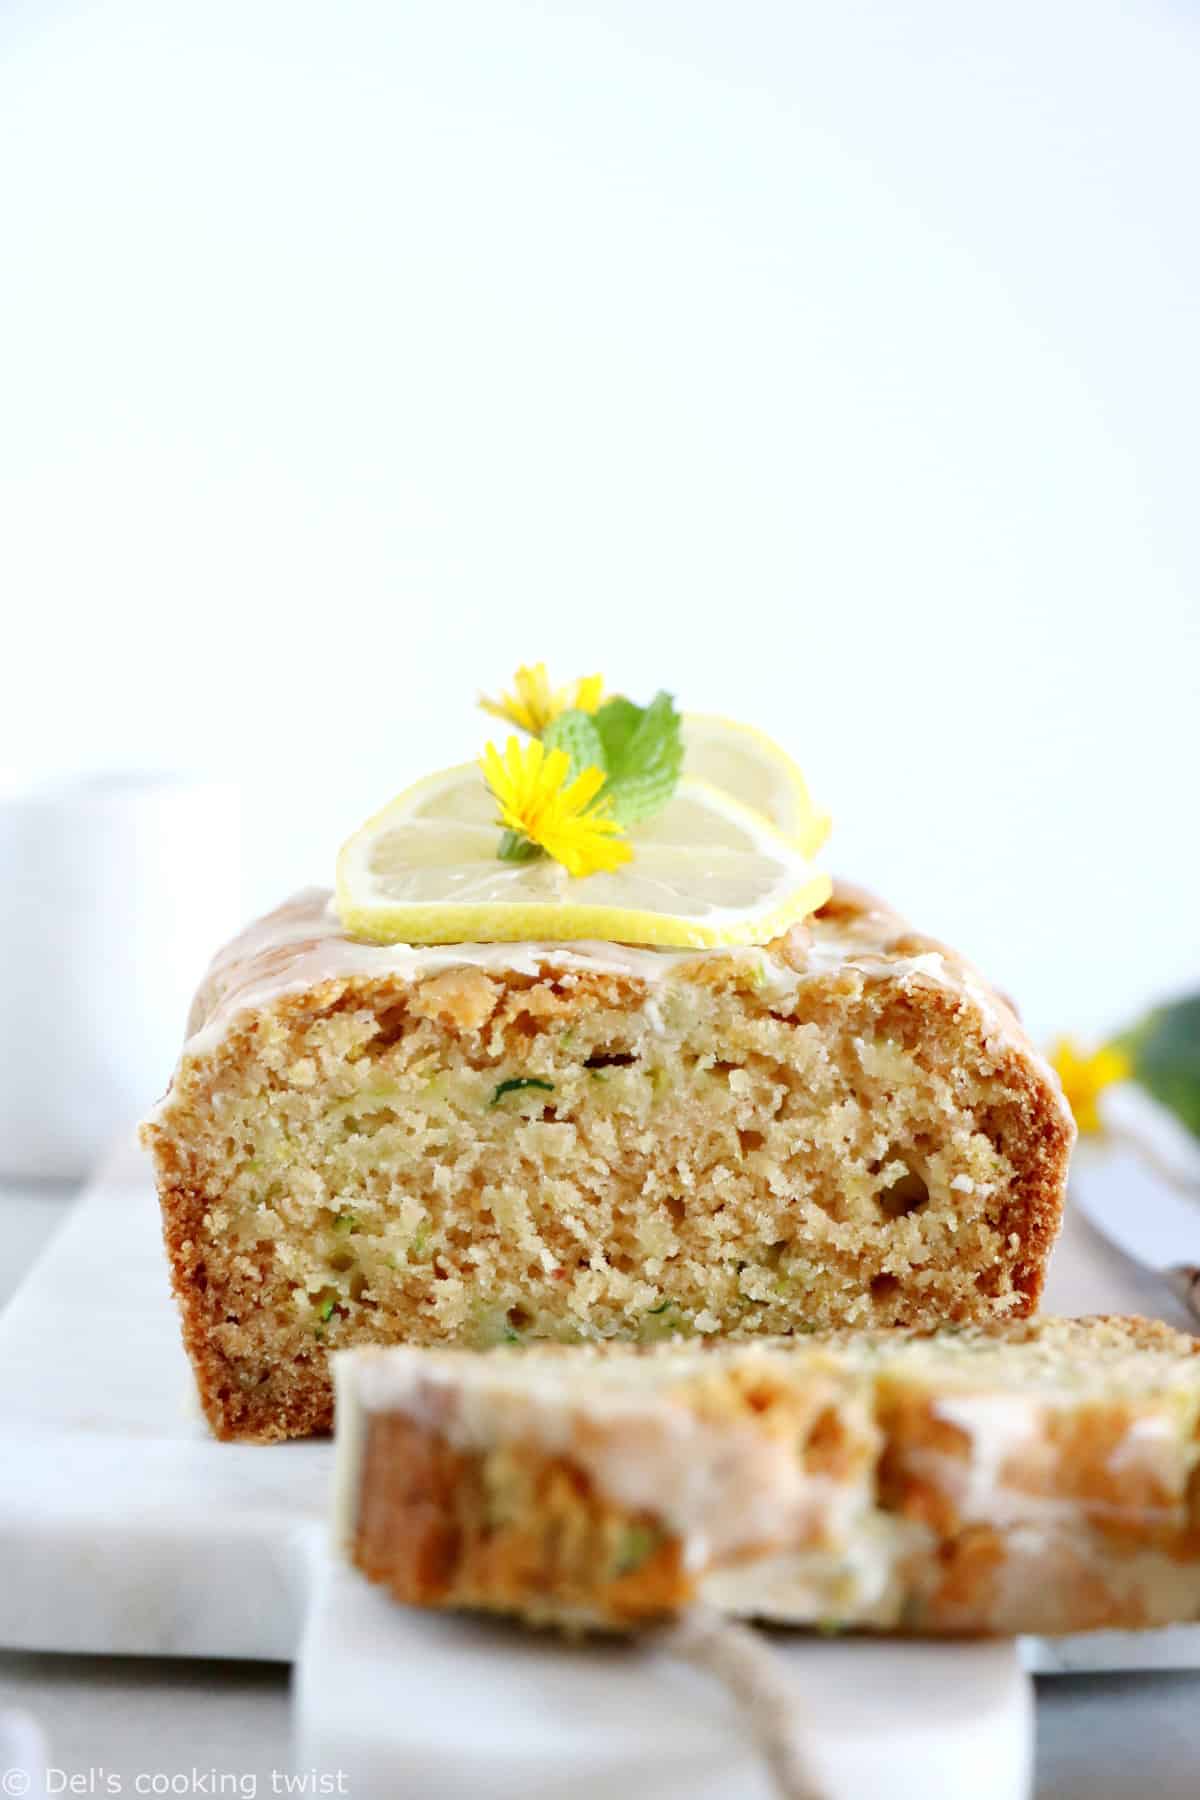 Ce cake vegan citron courgettes est tendre, moelleux et aéré, tout en étant relativement sain.